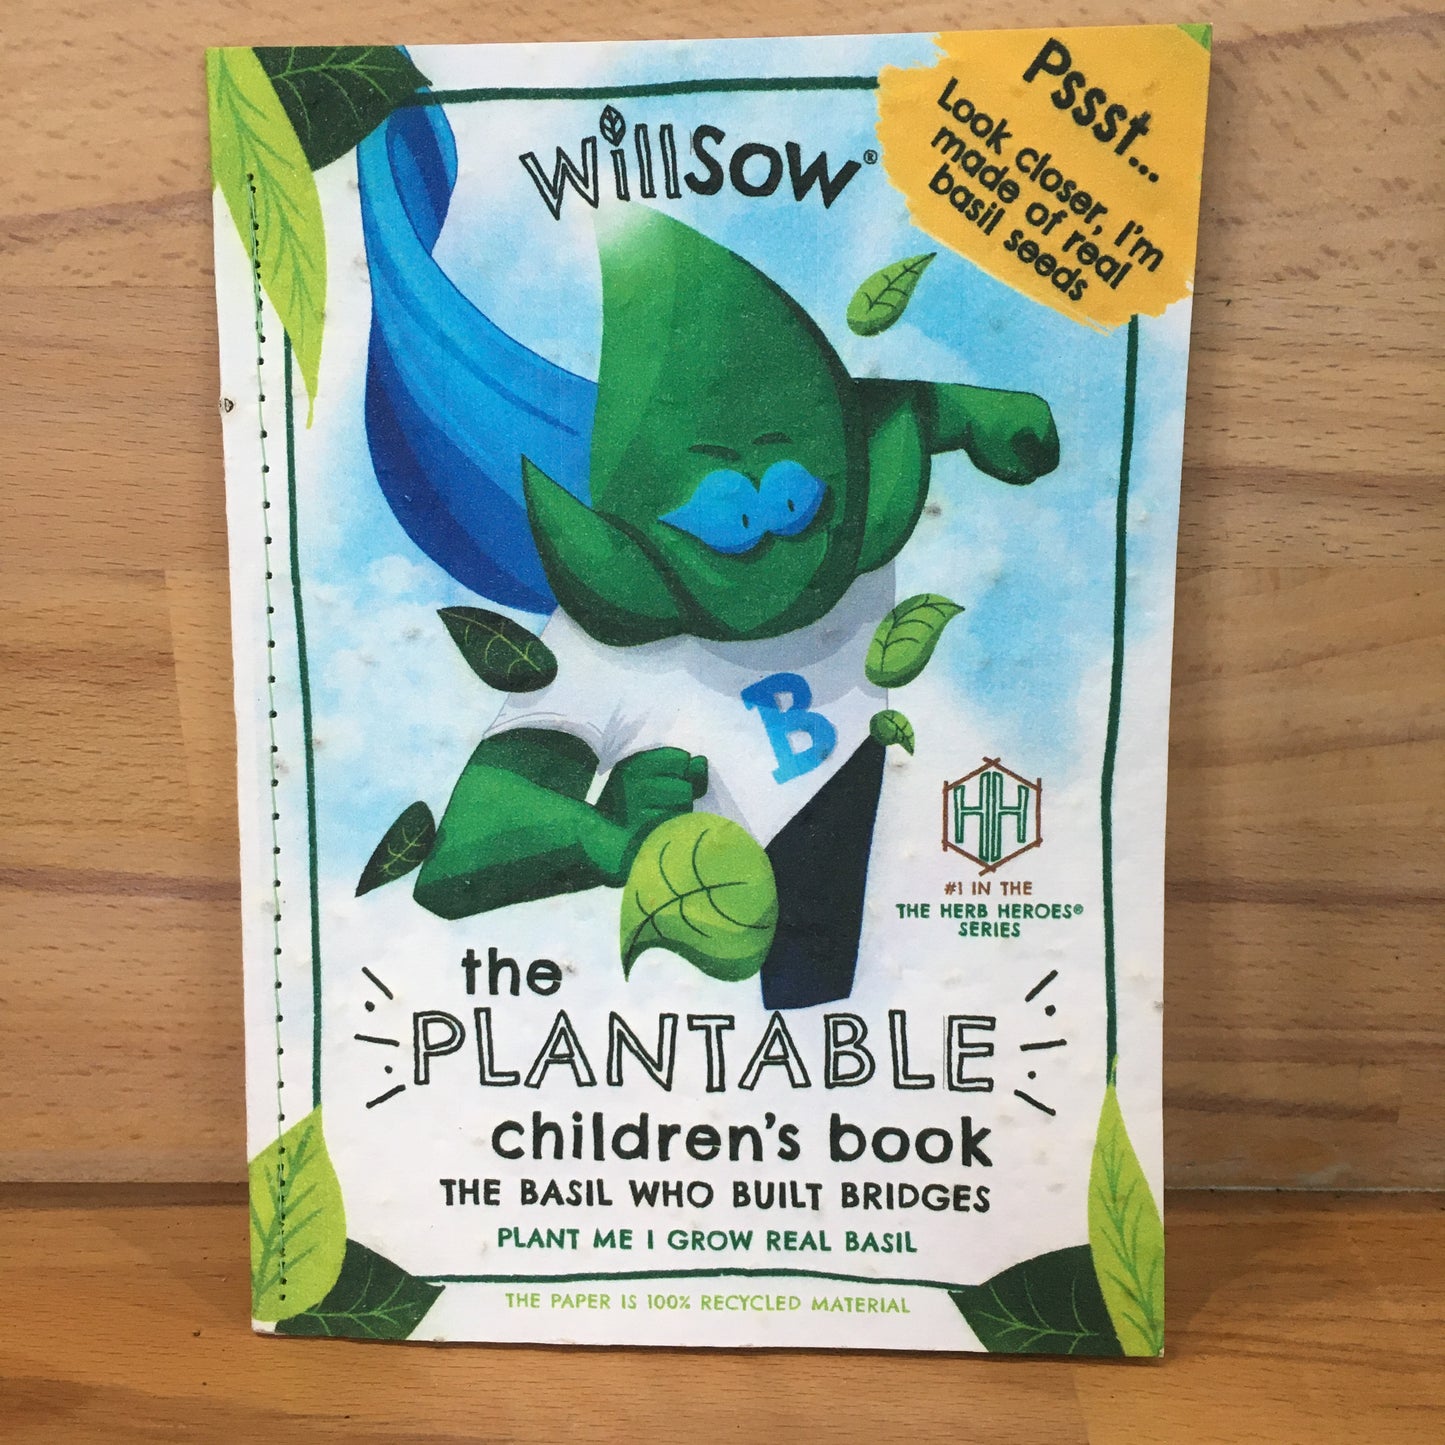 Willsow Children's Books